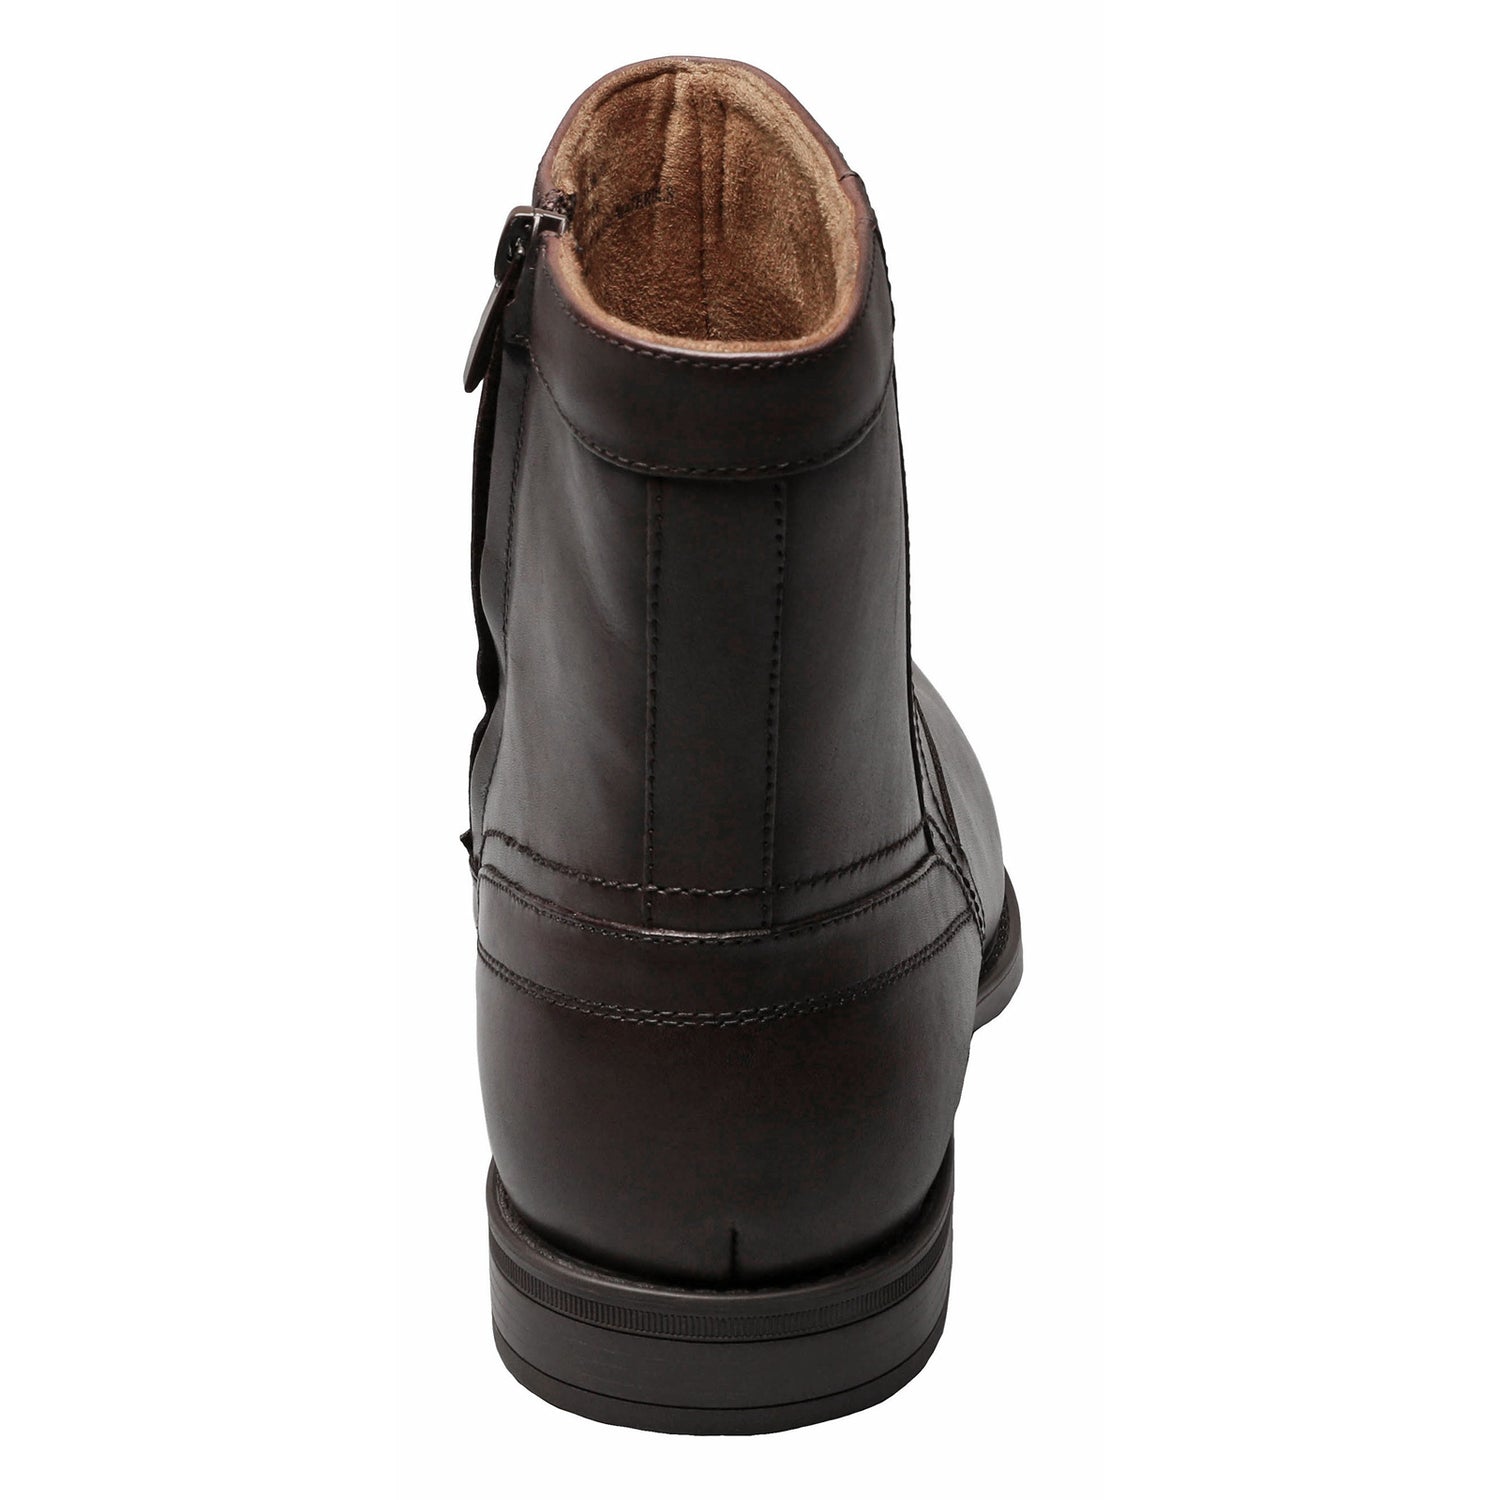 Florsheim Midtown Plain Toe Men's Boot - Black Size 9